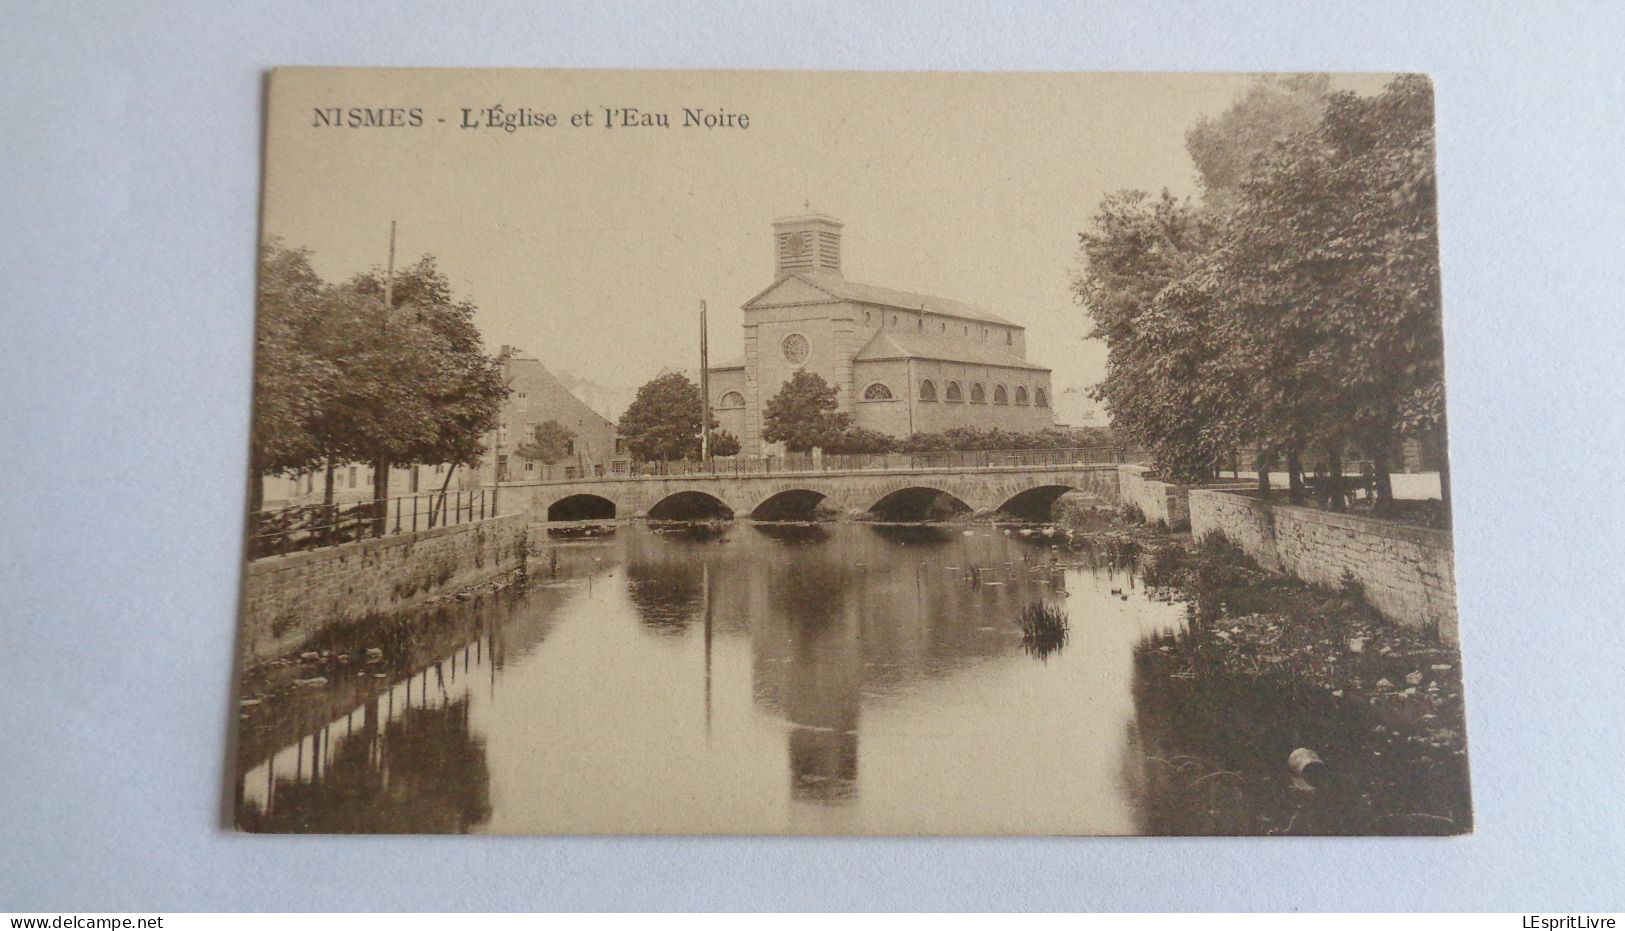 NISMES L'Eglise Et L'Eau Noire PK CP Province De Namur Commune Viroinval Belgique Carte Postale Post Kaart Postcard - Doische